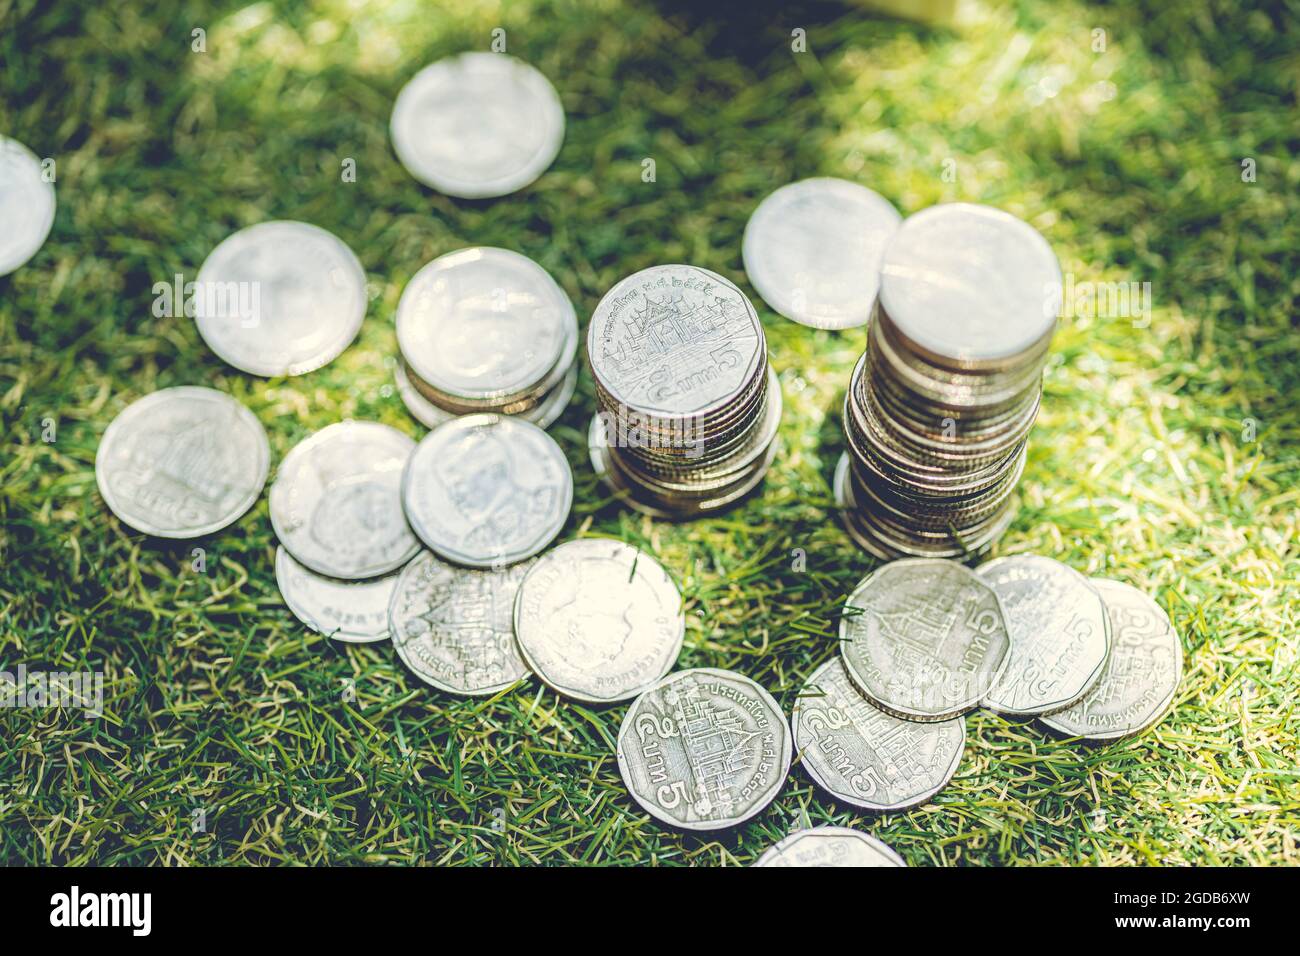 Stapel von Münzen Geld Thai Bad auf dem Boden Gras Natur Hintergrund mit Morgensonne scheinen platziert. Stockfoto